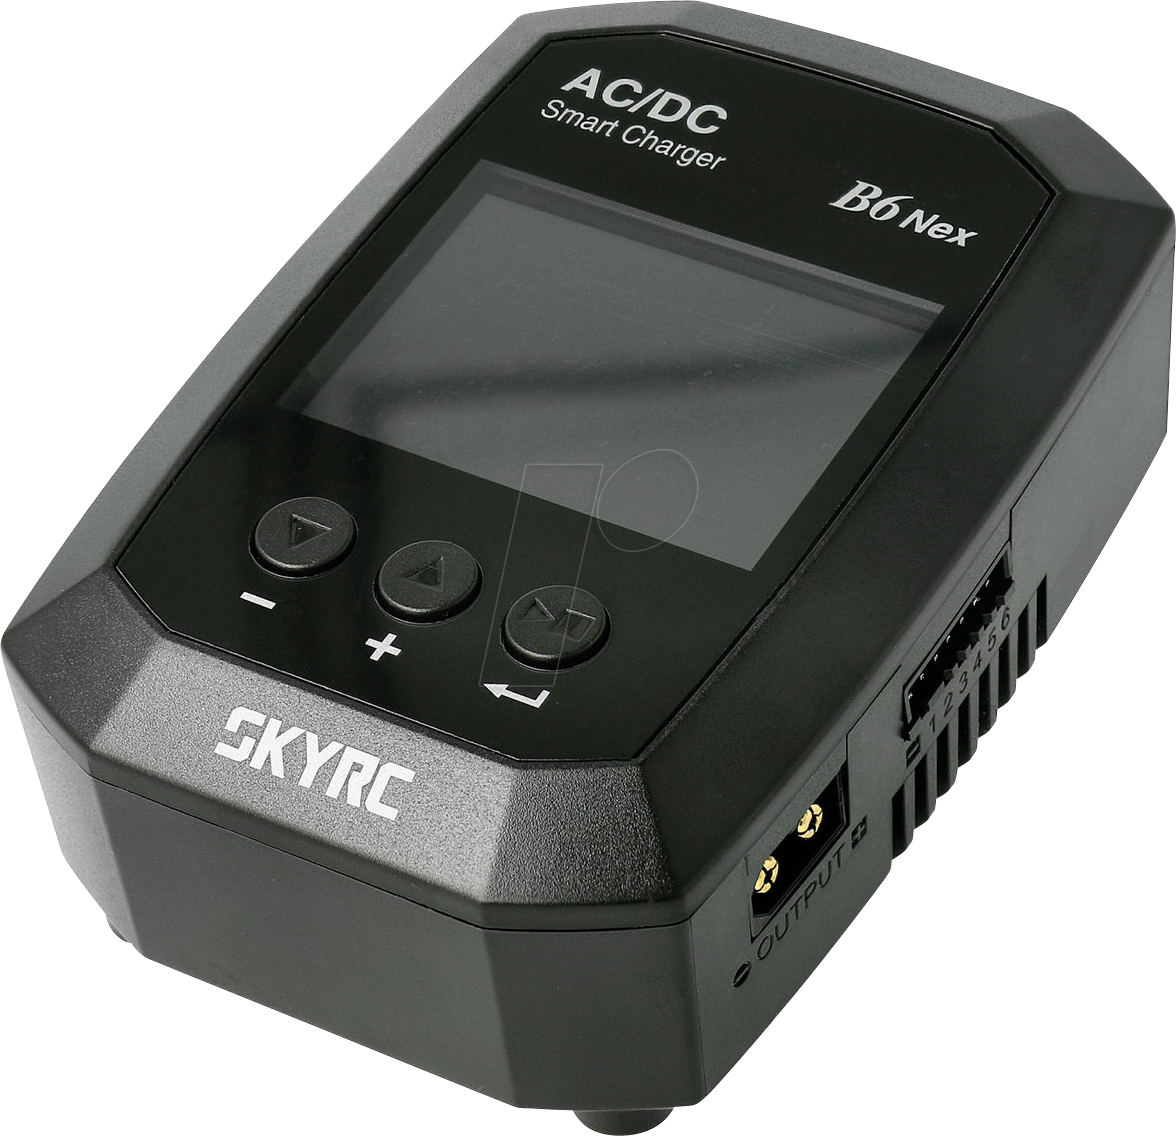 SKYRC B6 NEX - Ladegerät für Akkupacks B6, für 1-6s, max. 10 A, 200 W von SKYRC